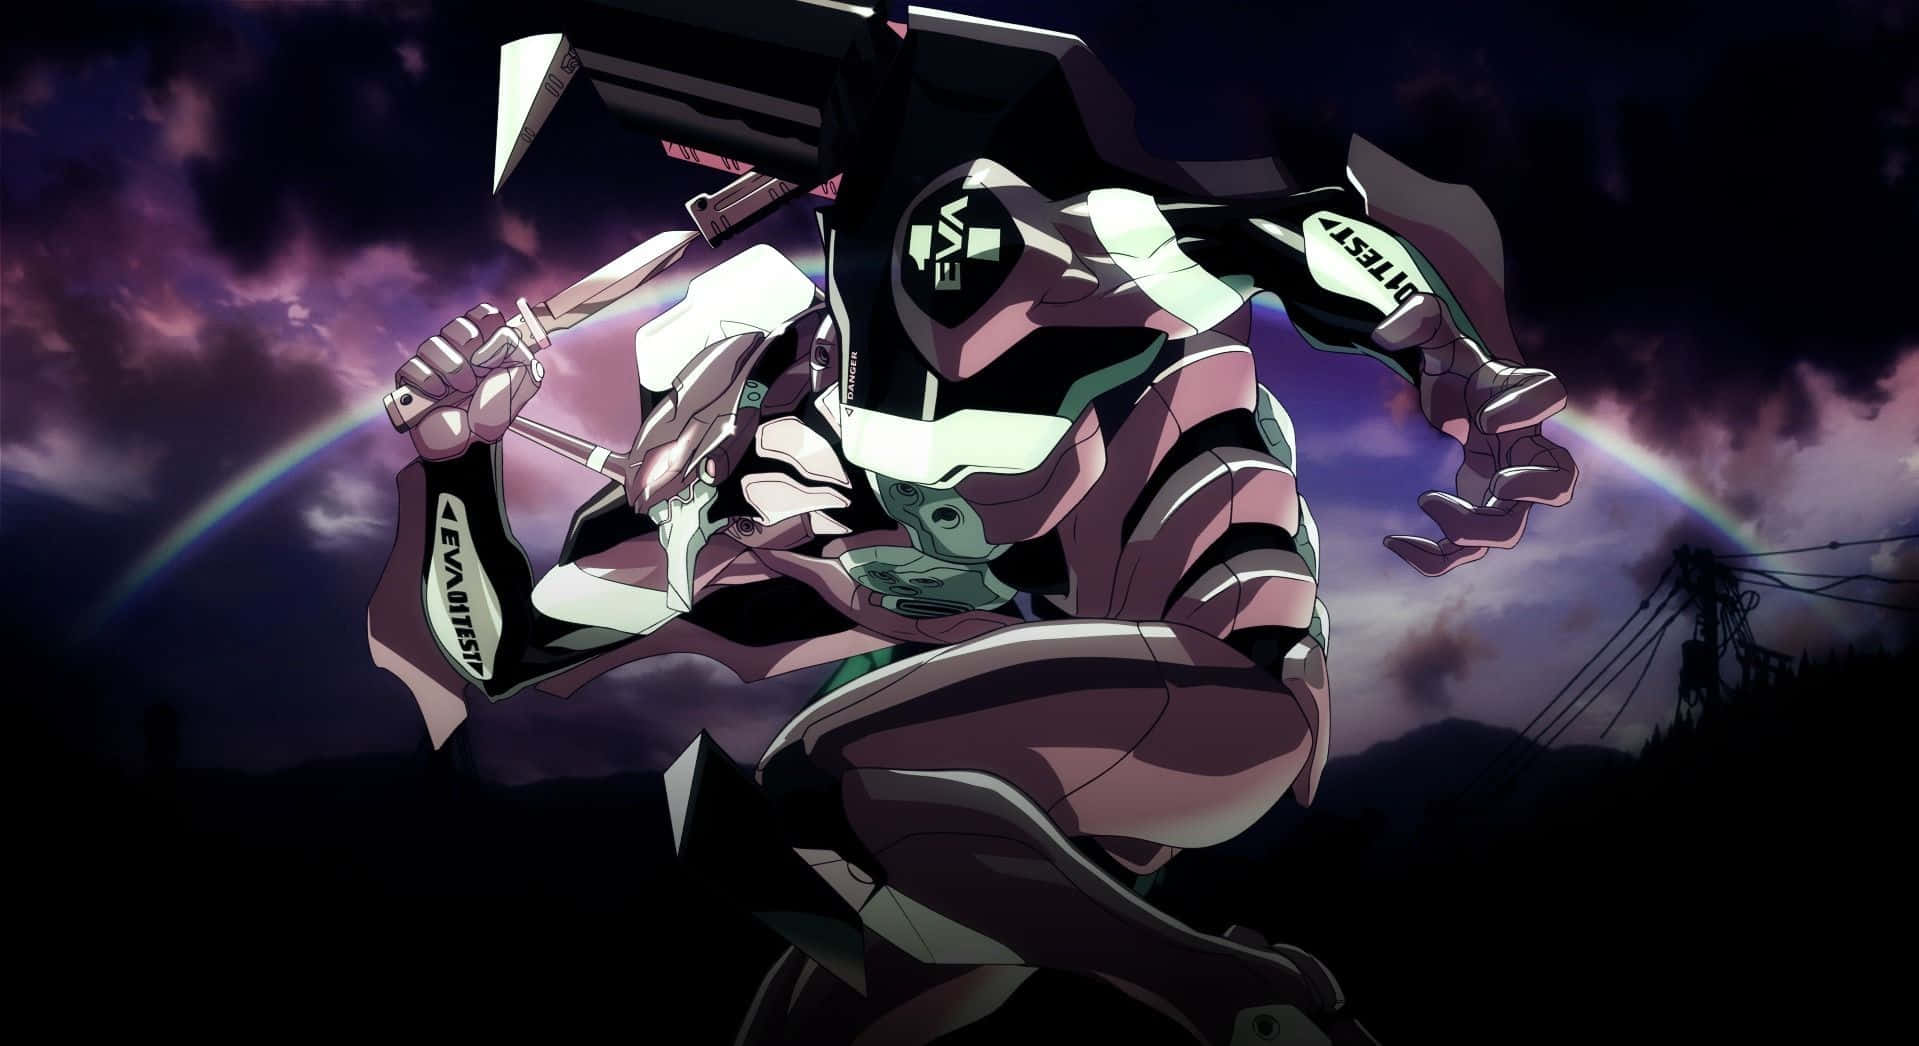 Shinjiikari Steht Beeindruckt Vor Den Mechanischen Bestien In Neon Genesis Evangelion.